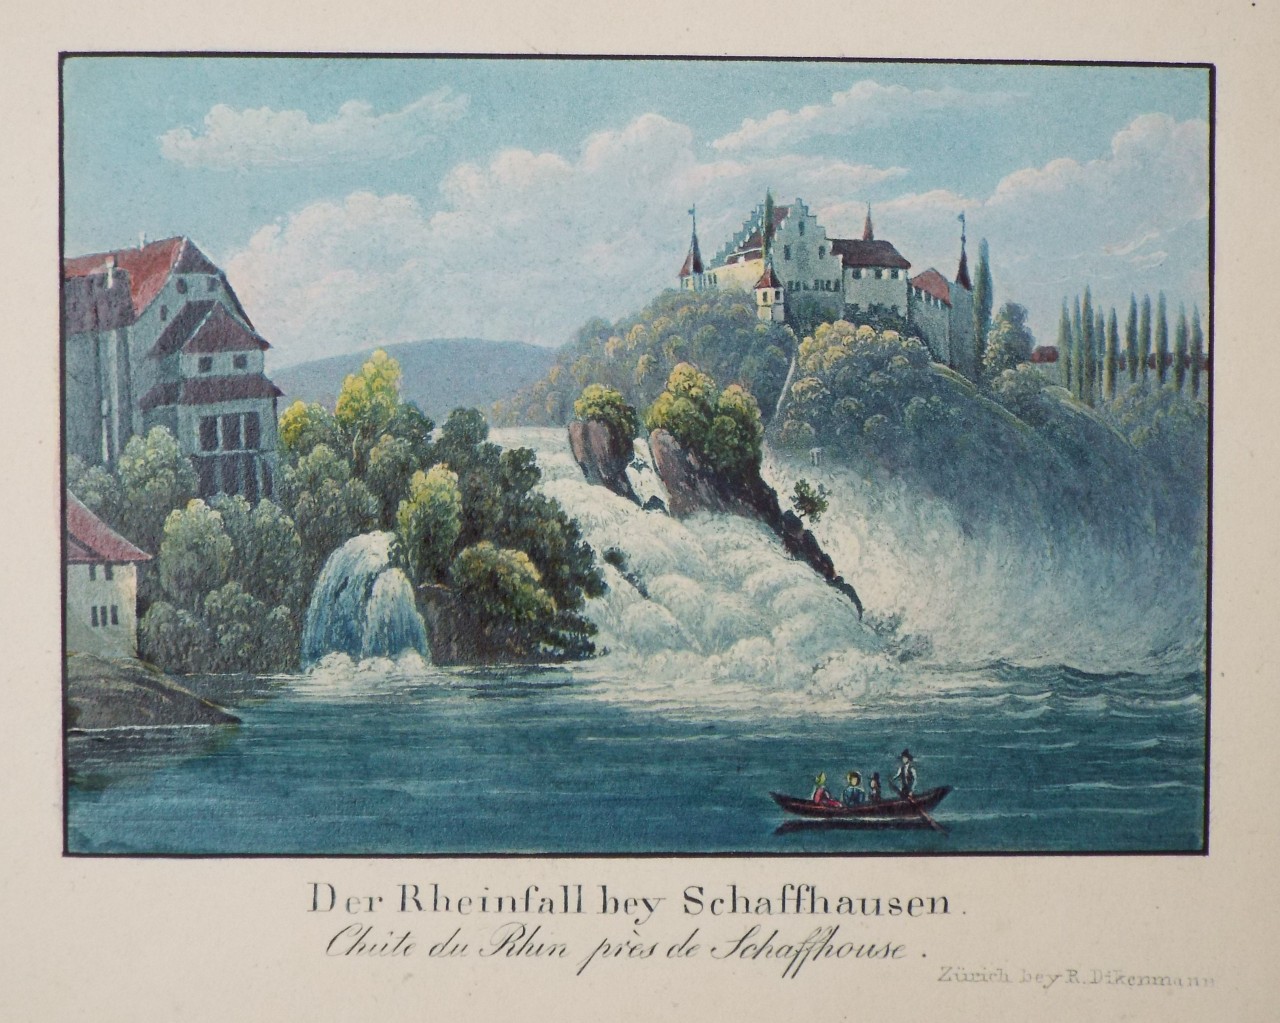 Aquatint - Der Rheinfall bey Schaffhausen. Chute du Rhin de Schaffhouse.